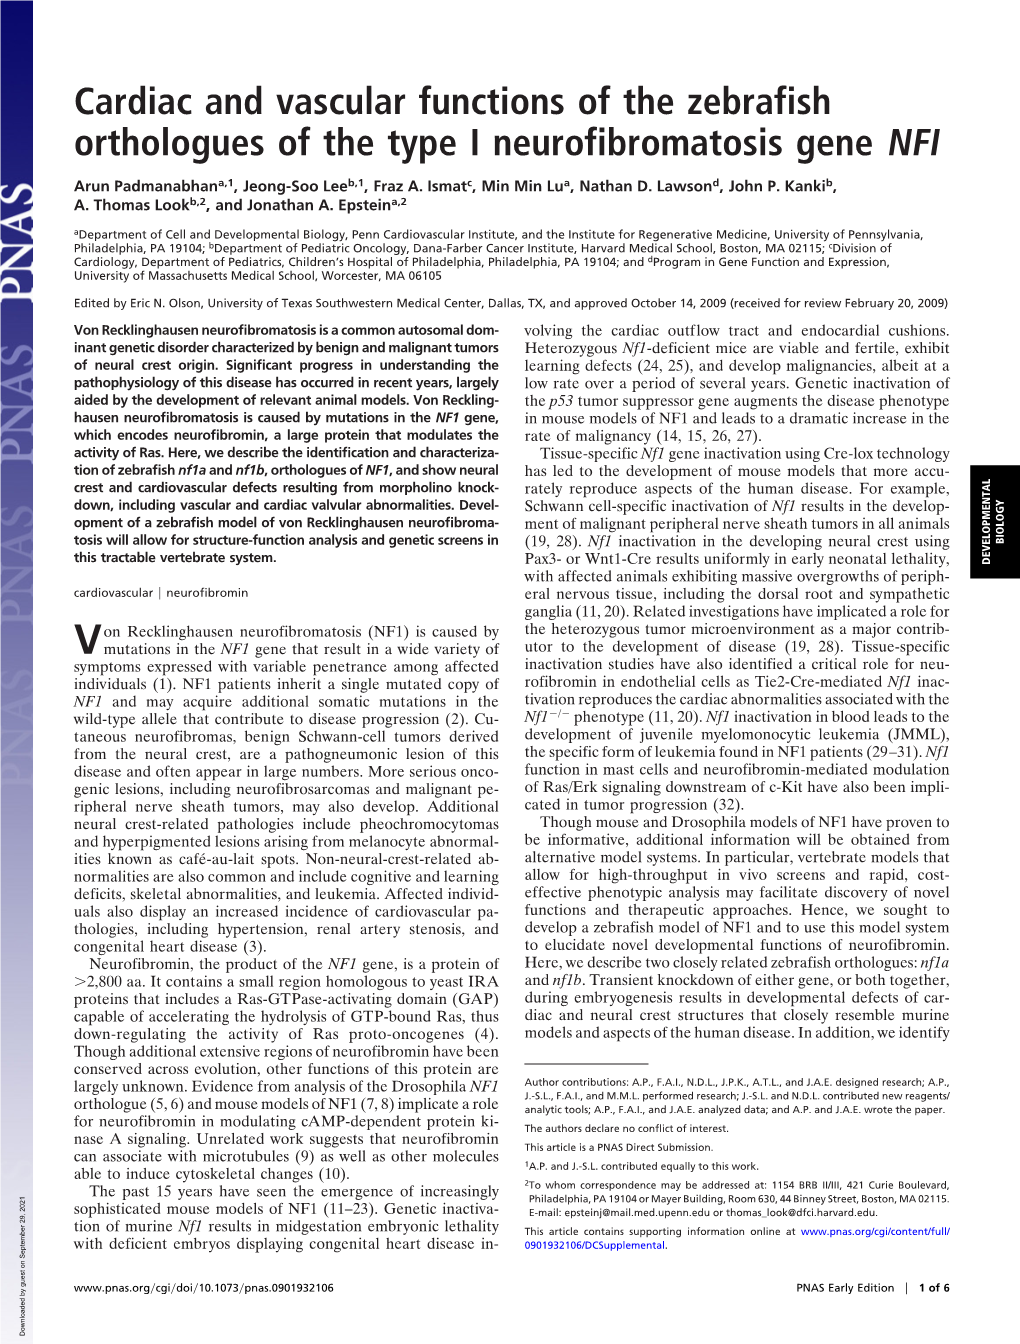 Cardiac and Vascular Functions of the Zebrafish Orthologues of the Type I Neurofibromatosis Gene NFI